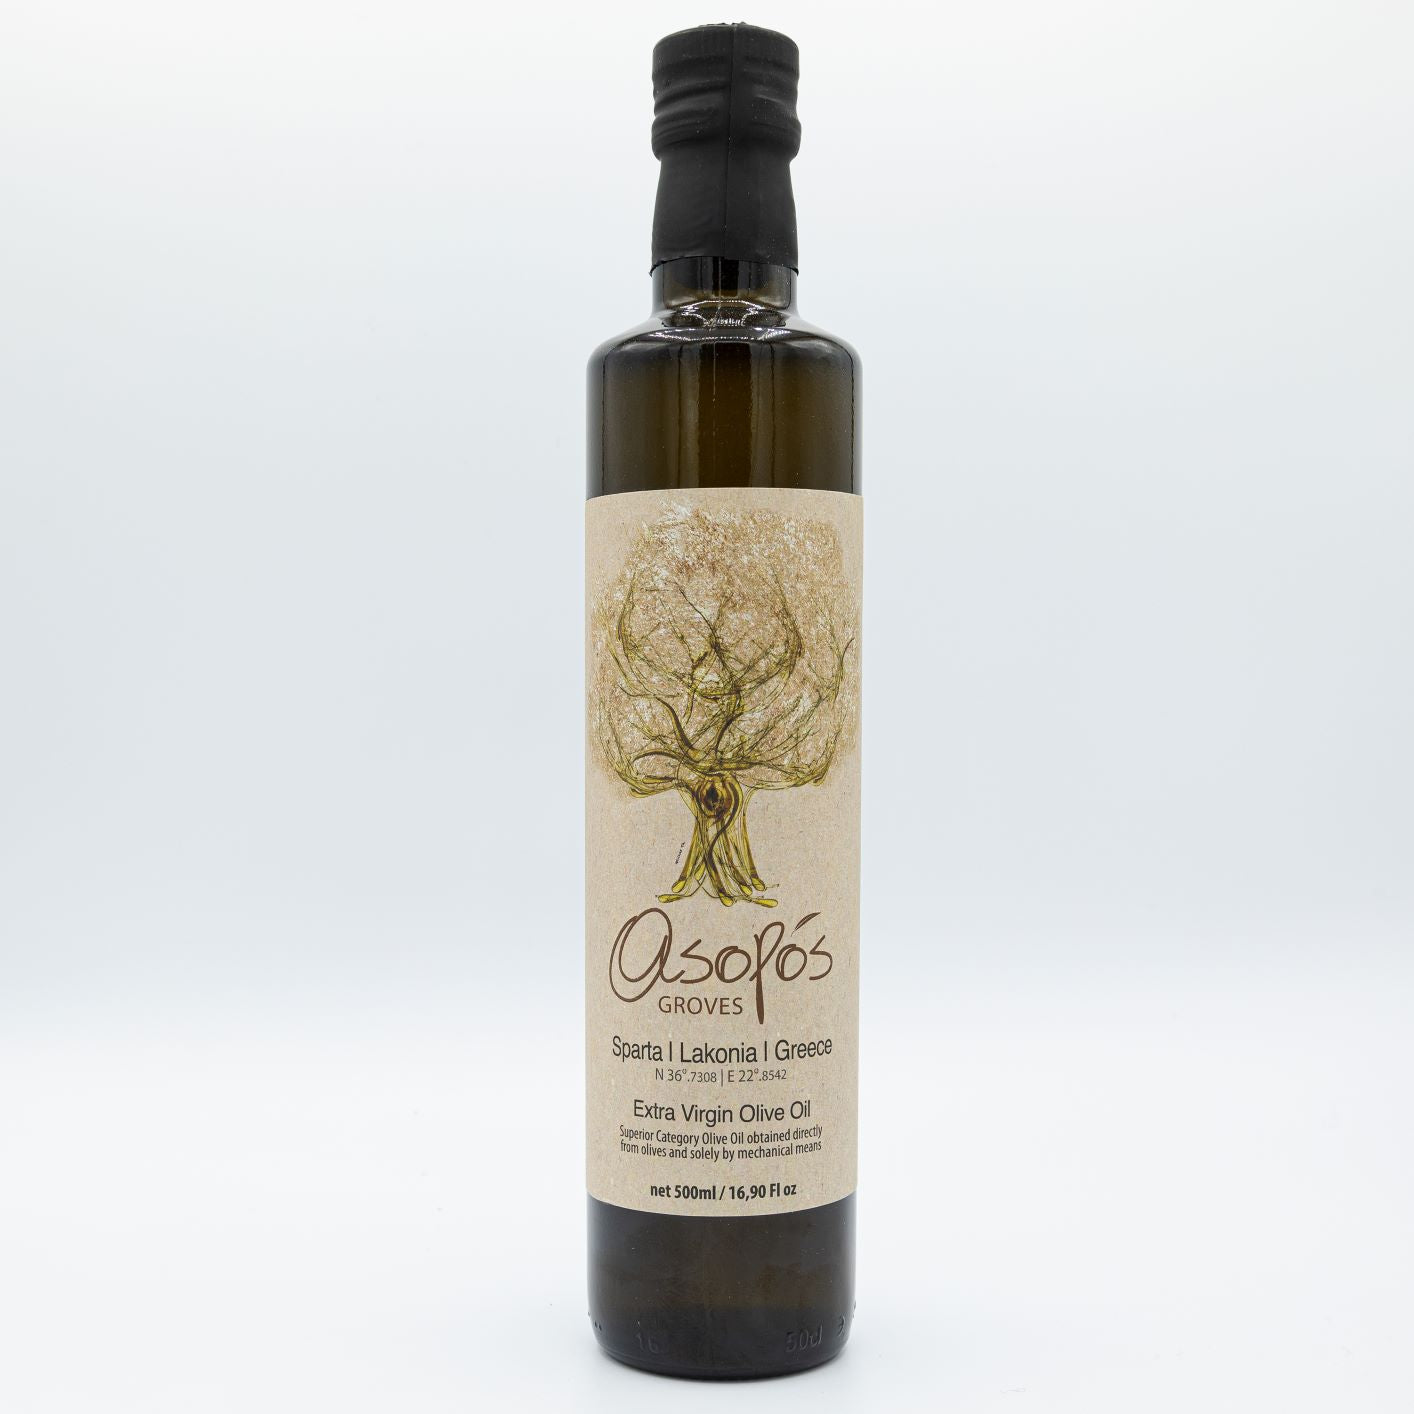 Asopos Groves Extra Virgin Olive Oil bottle 500ml